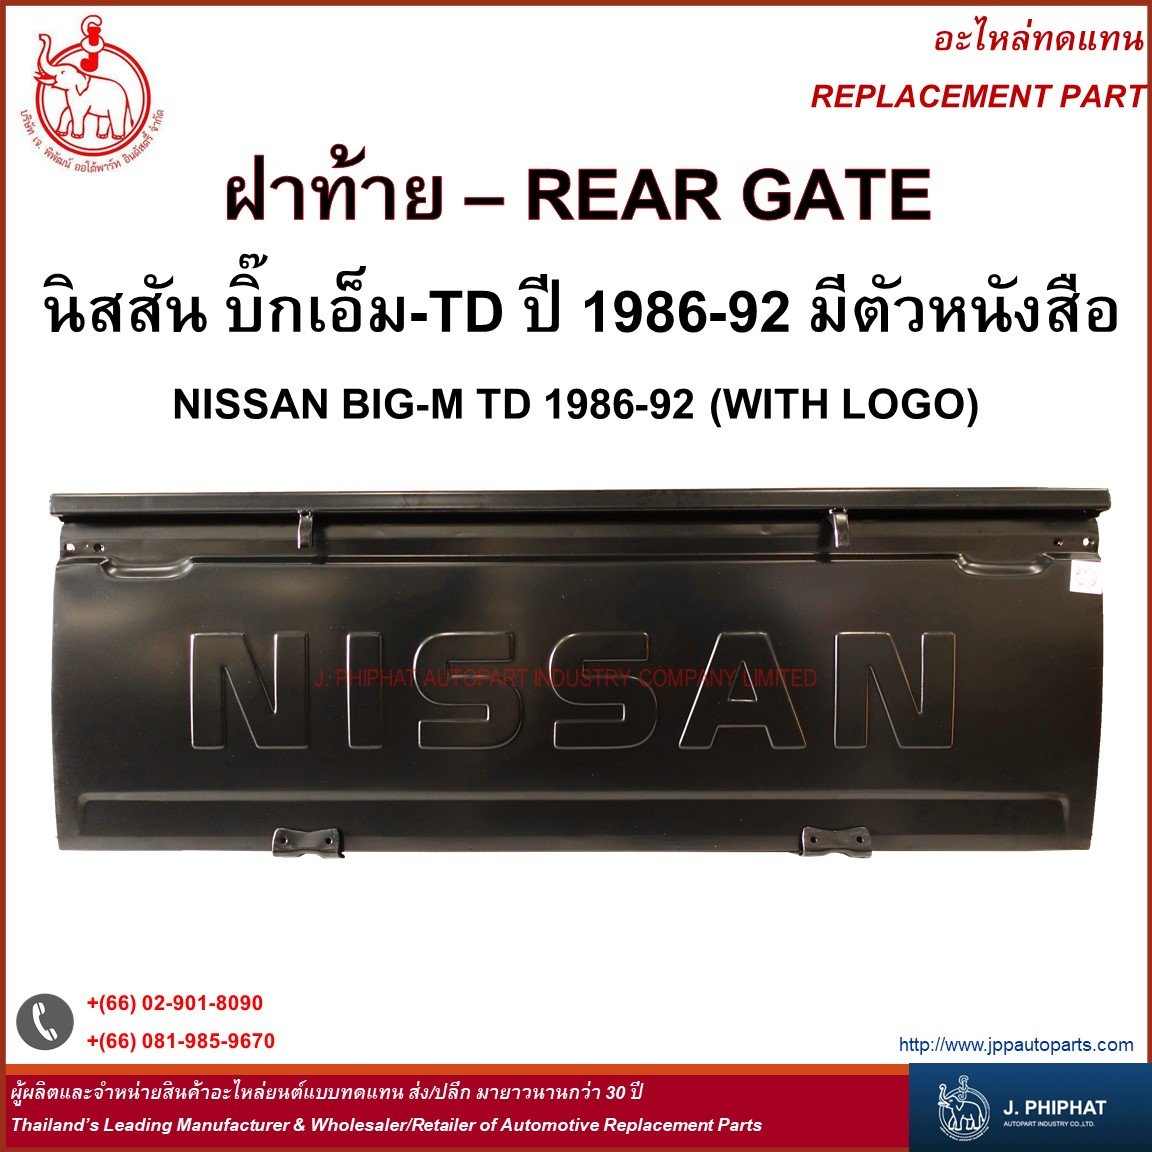 Rear Gate - Nissan Big - M TD '86-92 with logo